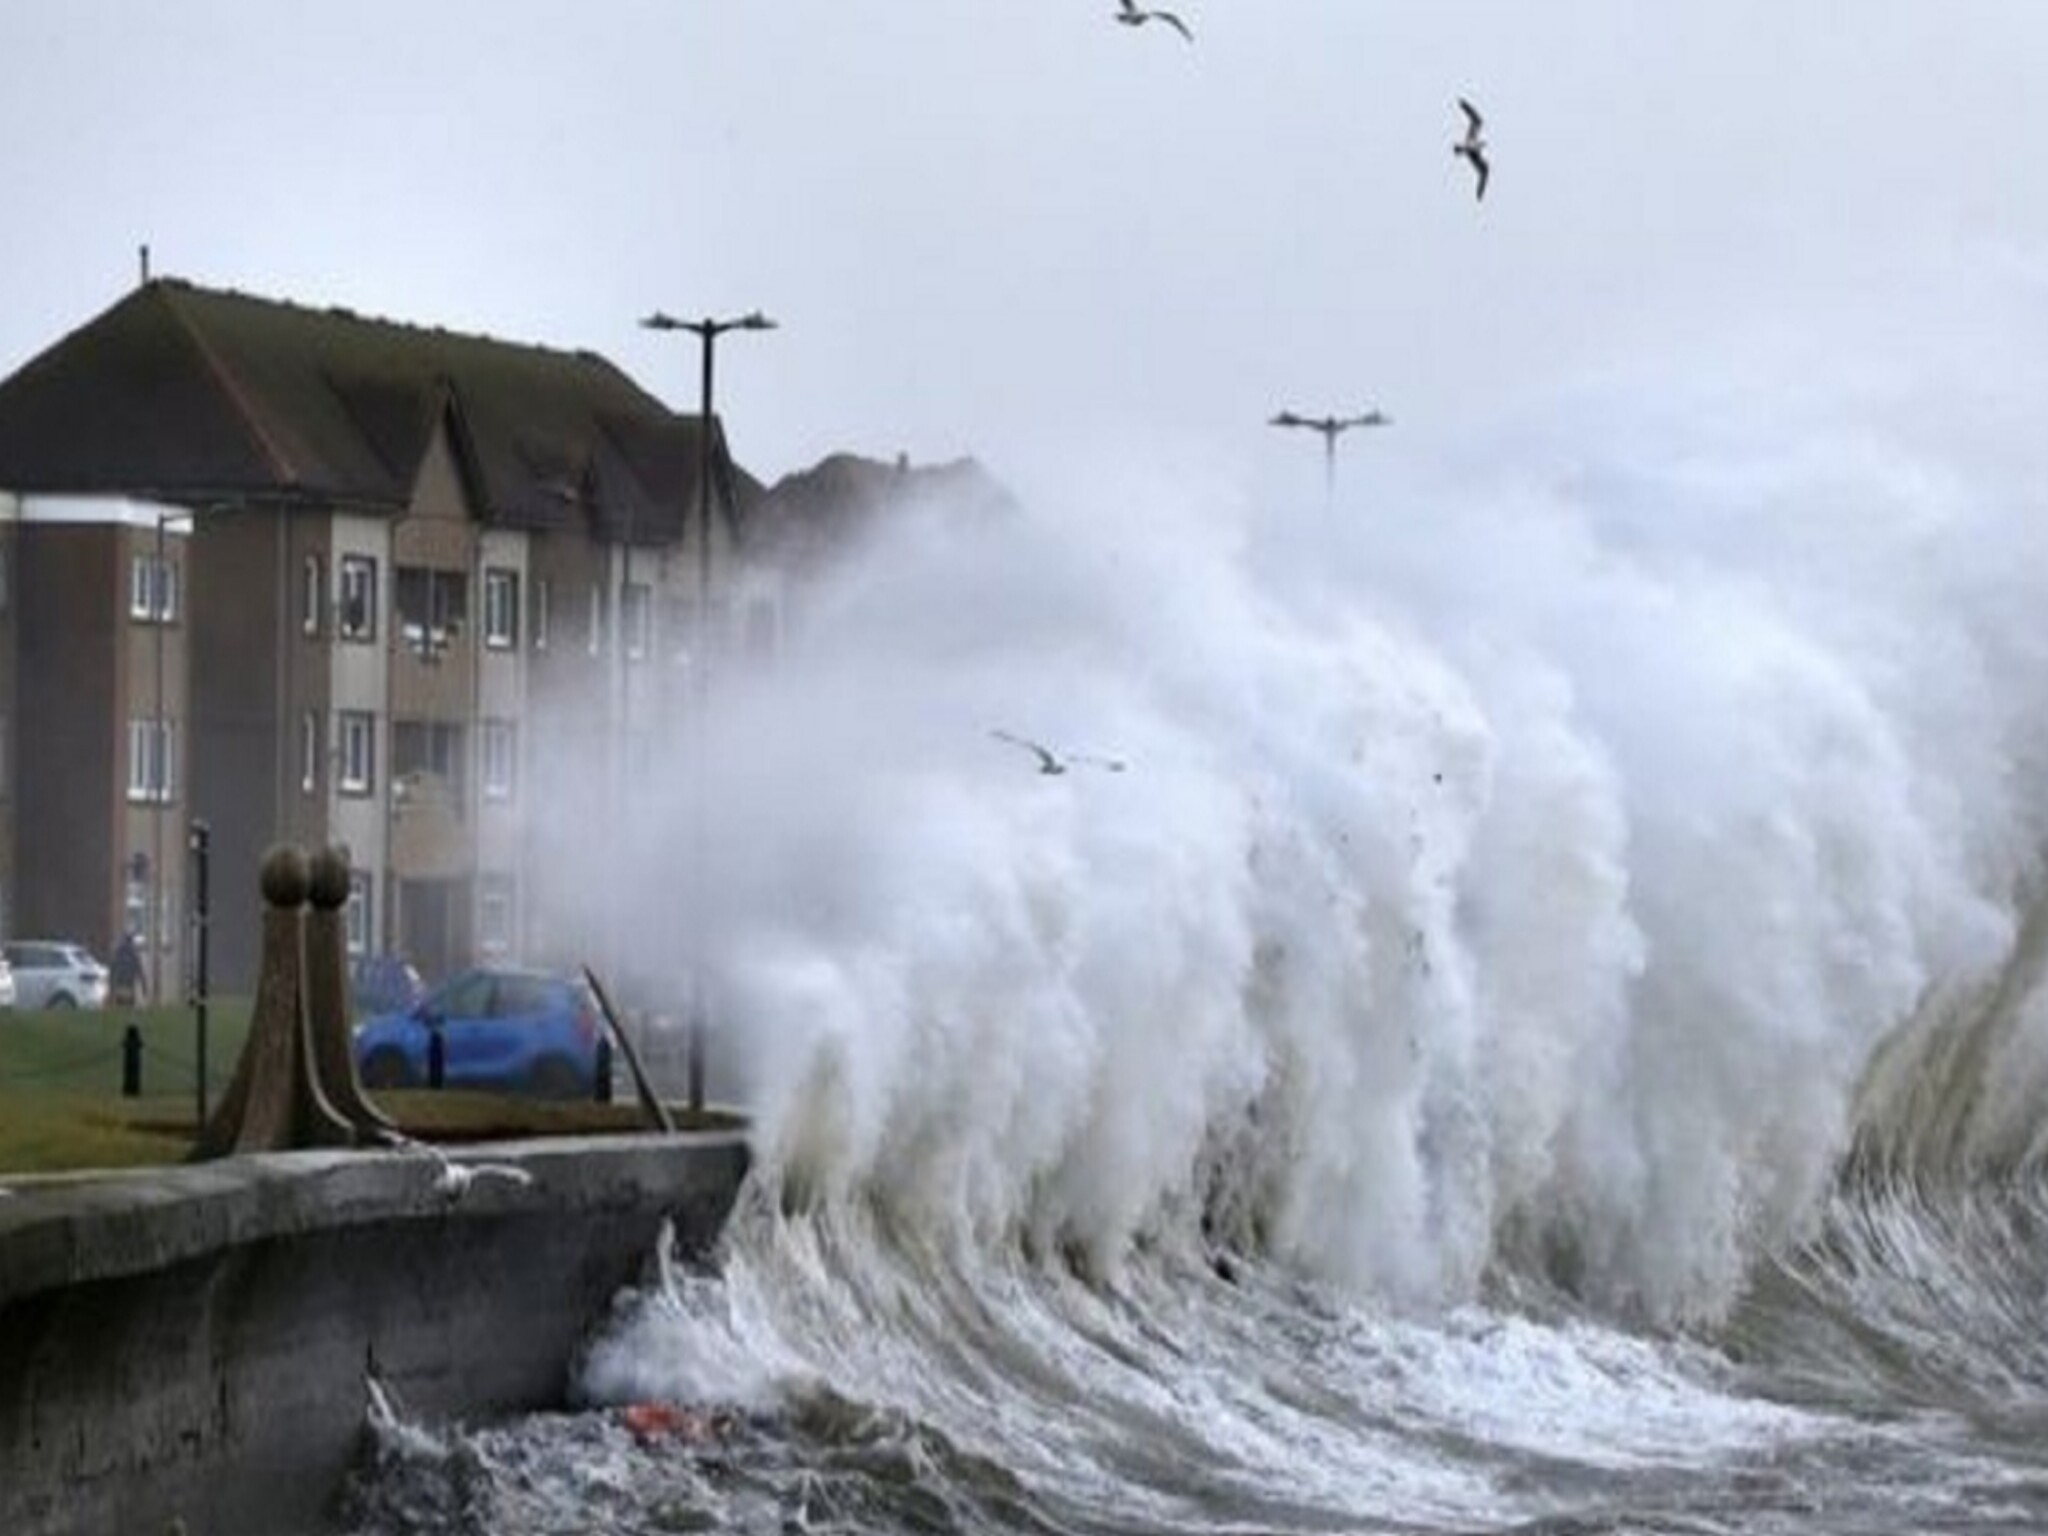 فيضانات وانقطاع للكهرباء في شمال أوروبا بسبب العاصفة "بابيت"